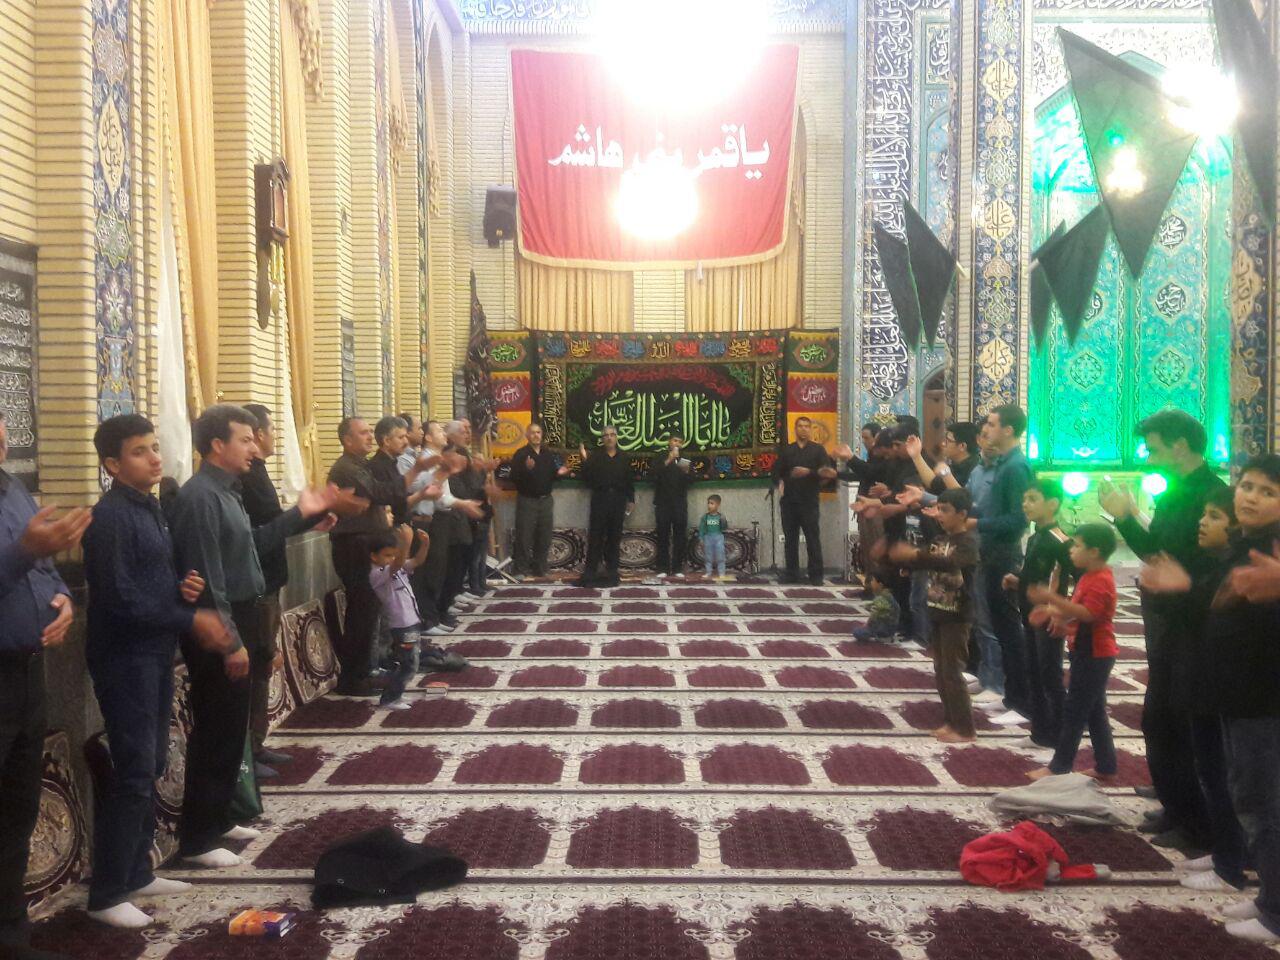 شب قدربیست و یکم در مسجدحضرت ابوالفضل(ع)دیزج خلیل